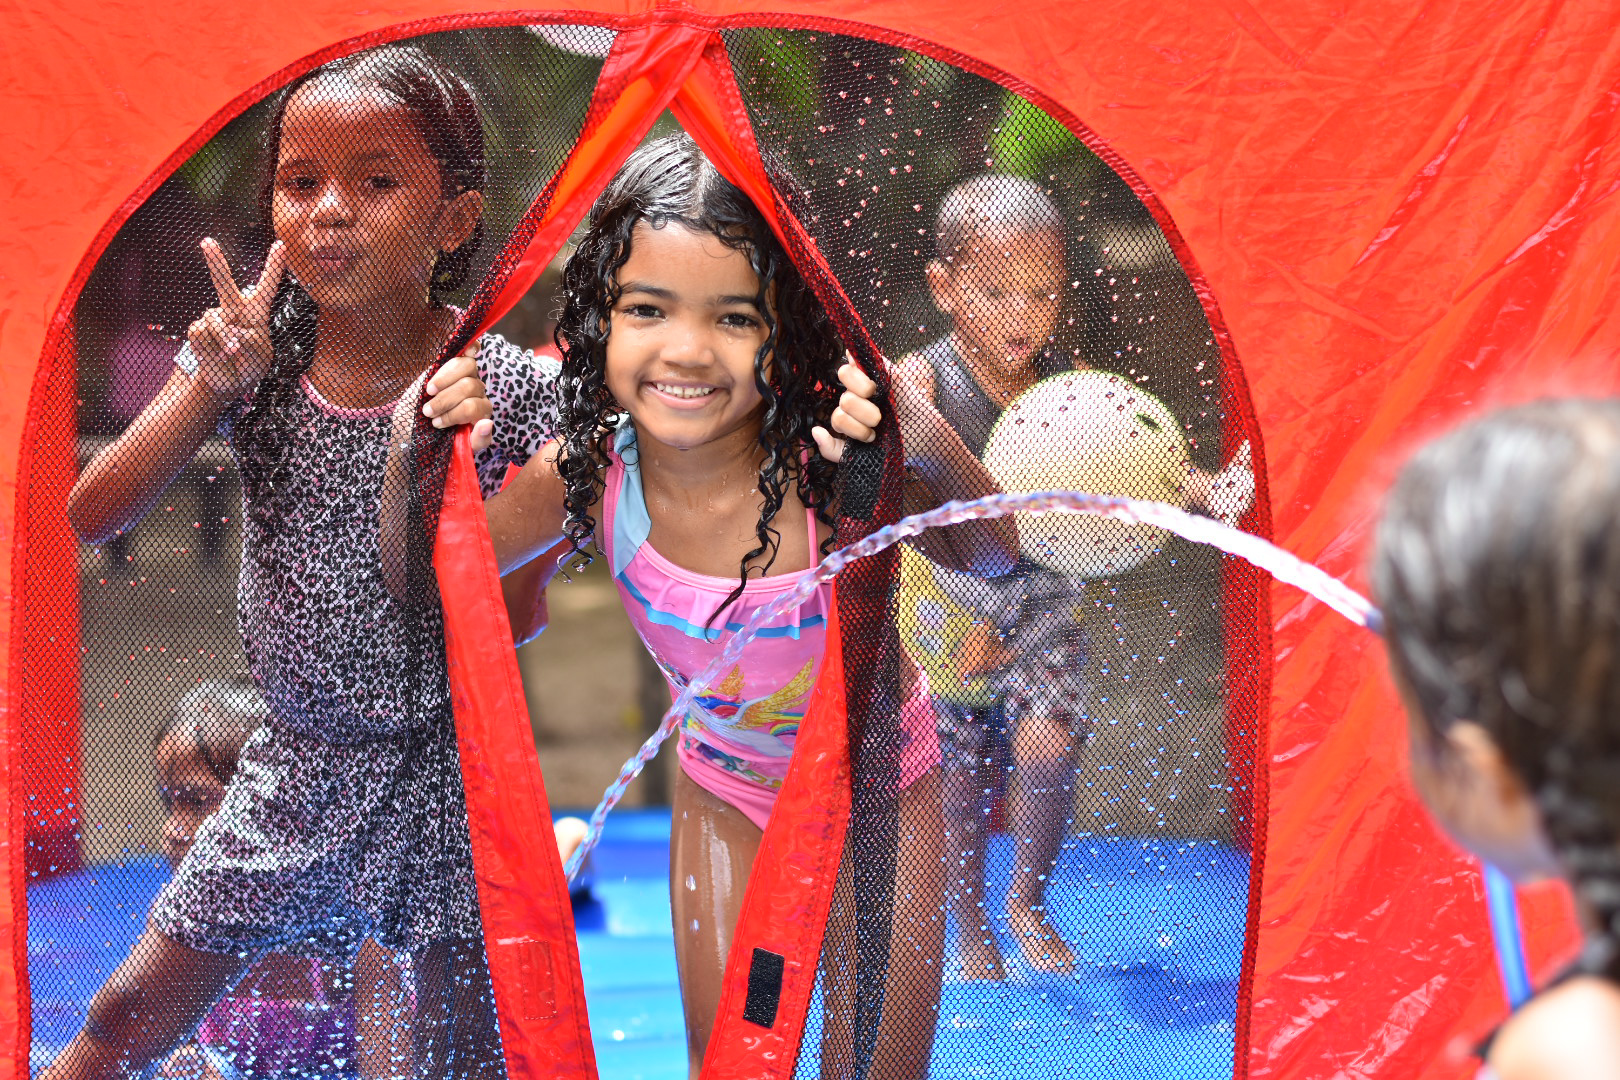 Prefeitura realiza atividades para mais de 150 crianças no Parque Municipal de Maceió. Foto: Secom Maceió